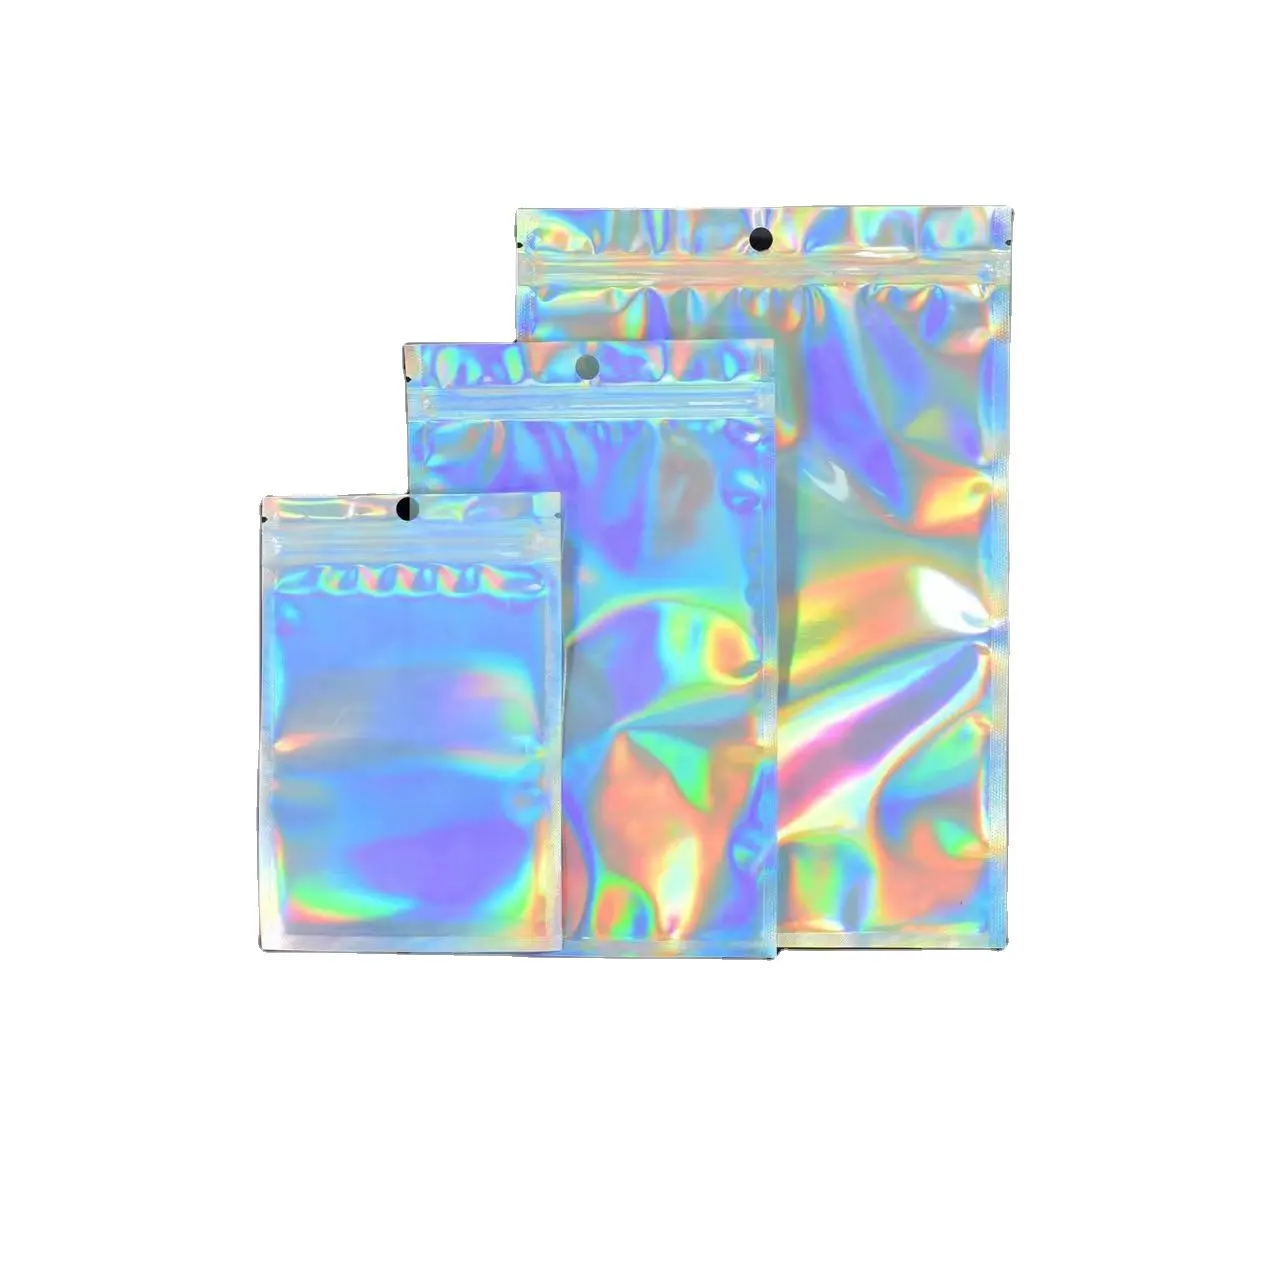 Sacos plásticos com impressão holográfica Mylar Ziplock para embalagem, folha metálica à prova de cheiro impressa personalizada, laser rosa